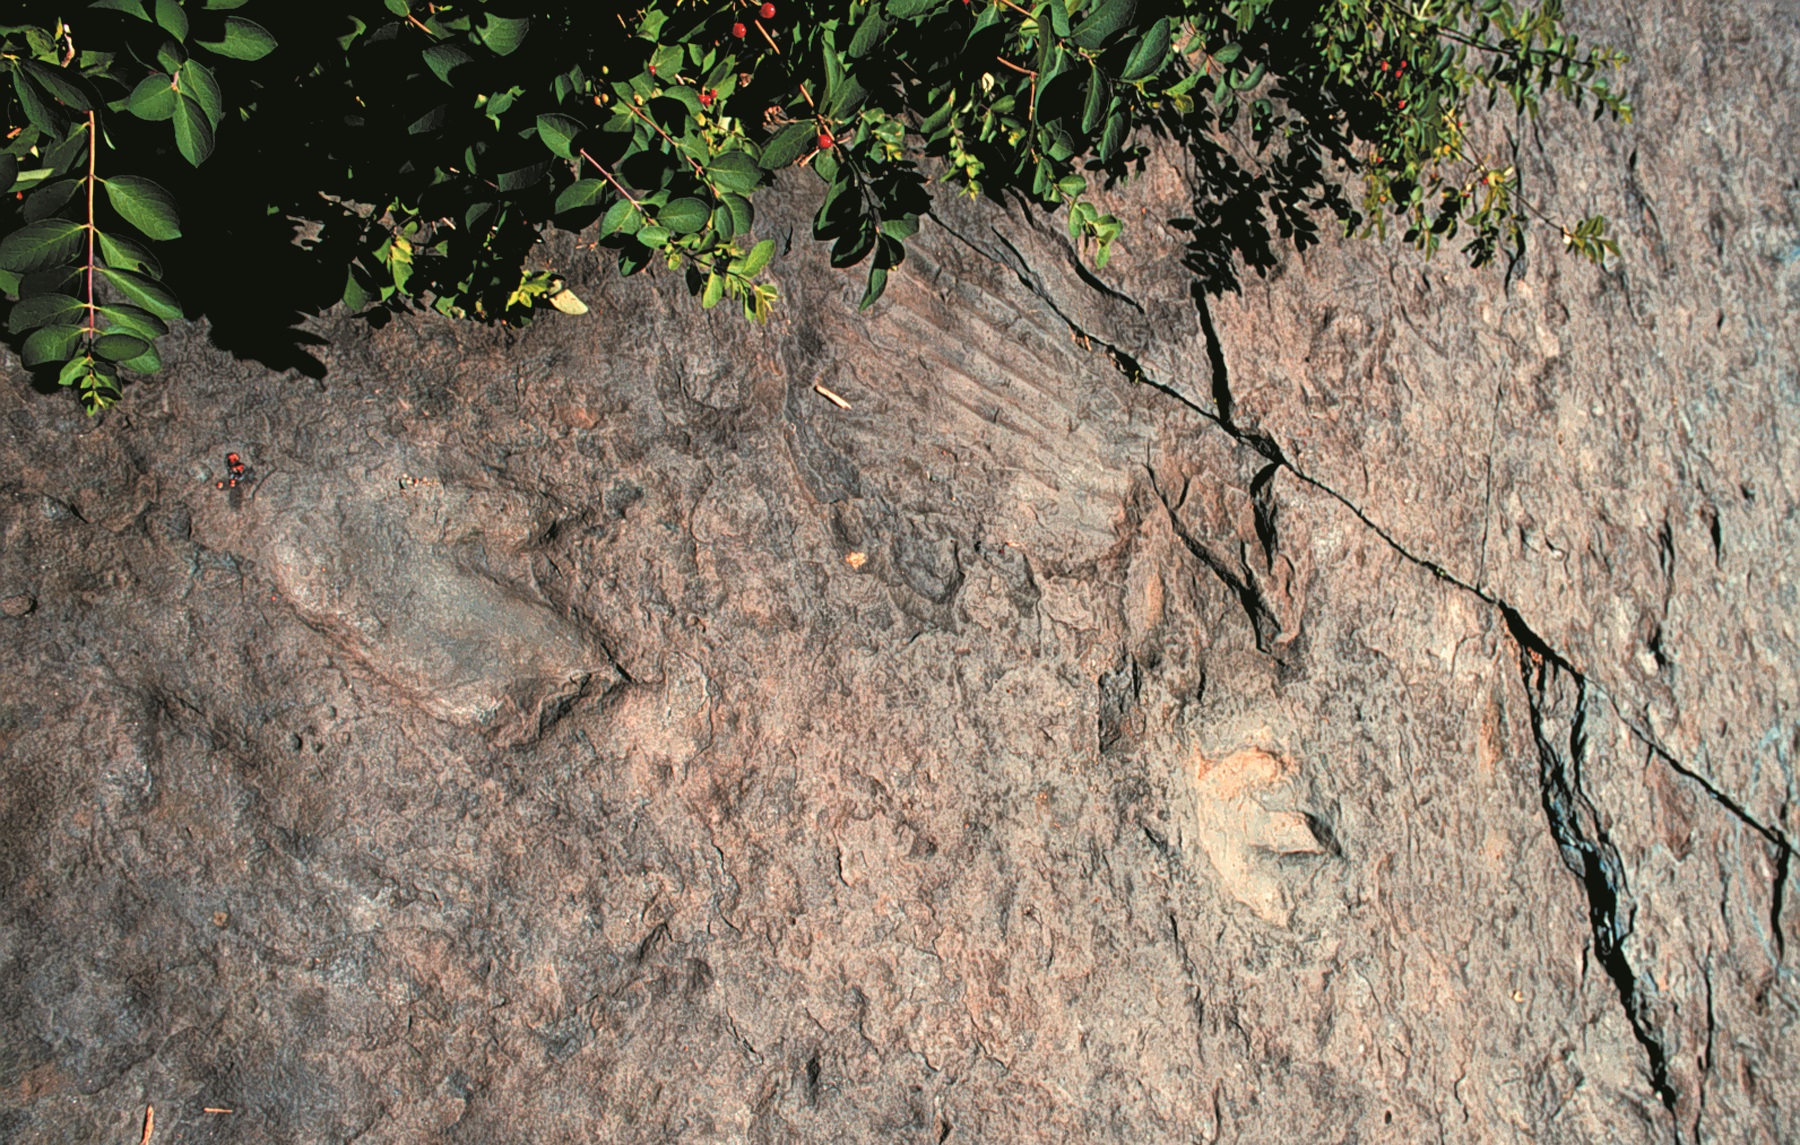 Dinosaur footprint fossil at Dinosaur Footprints